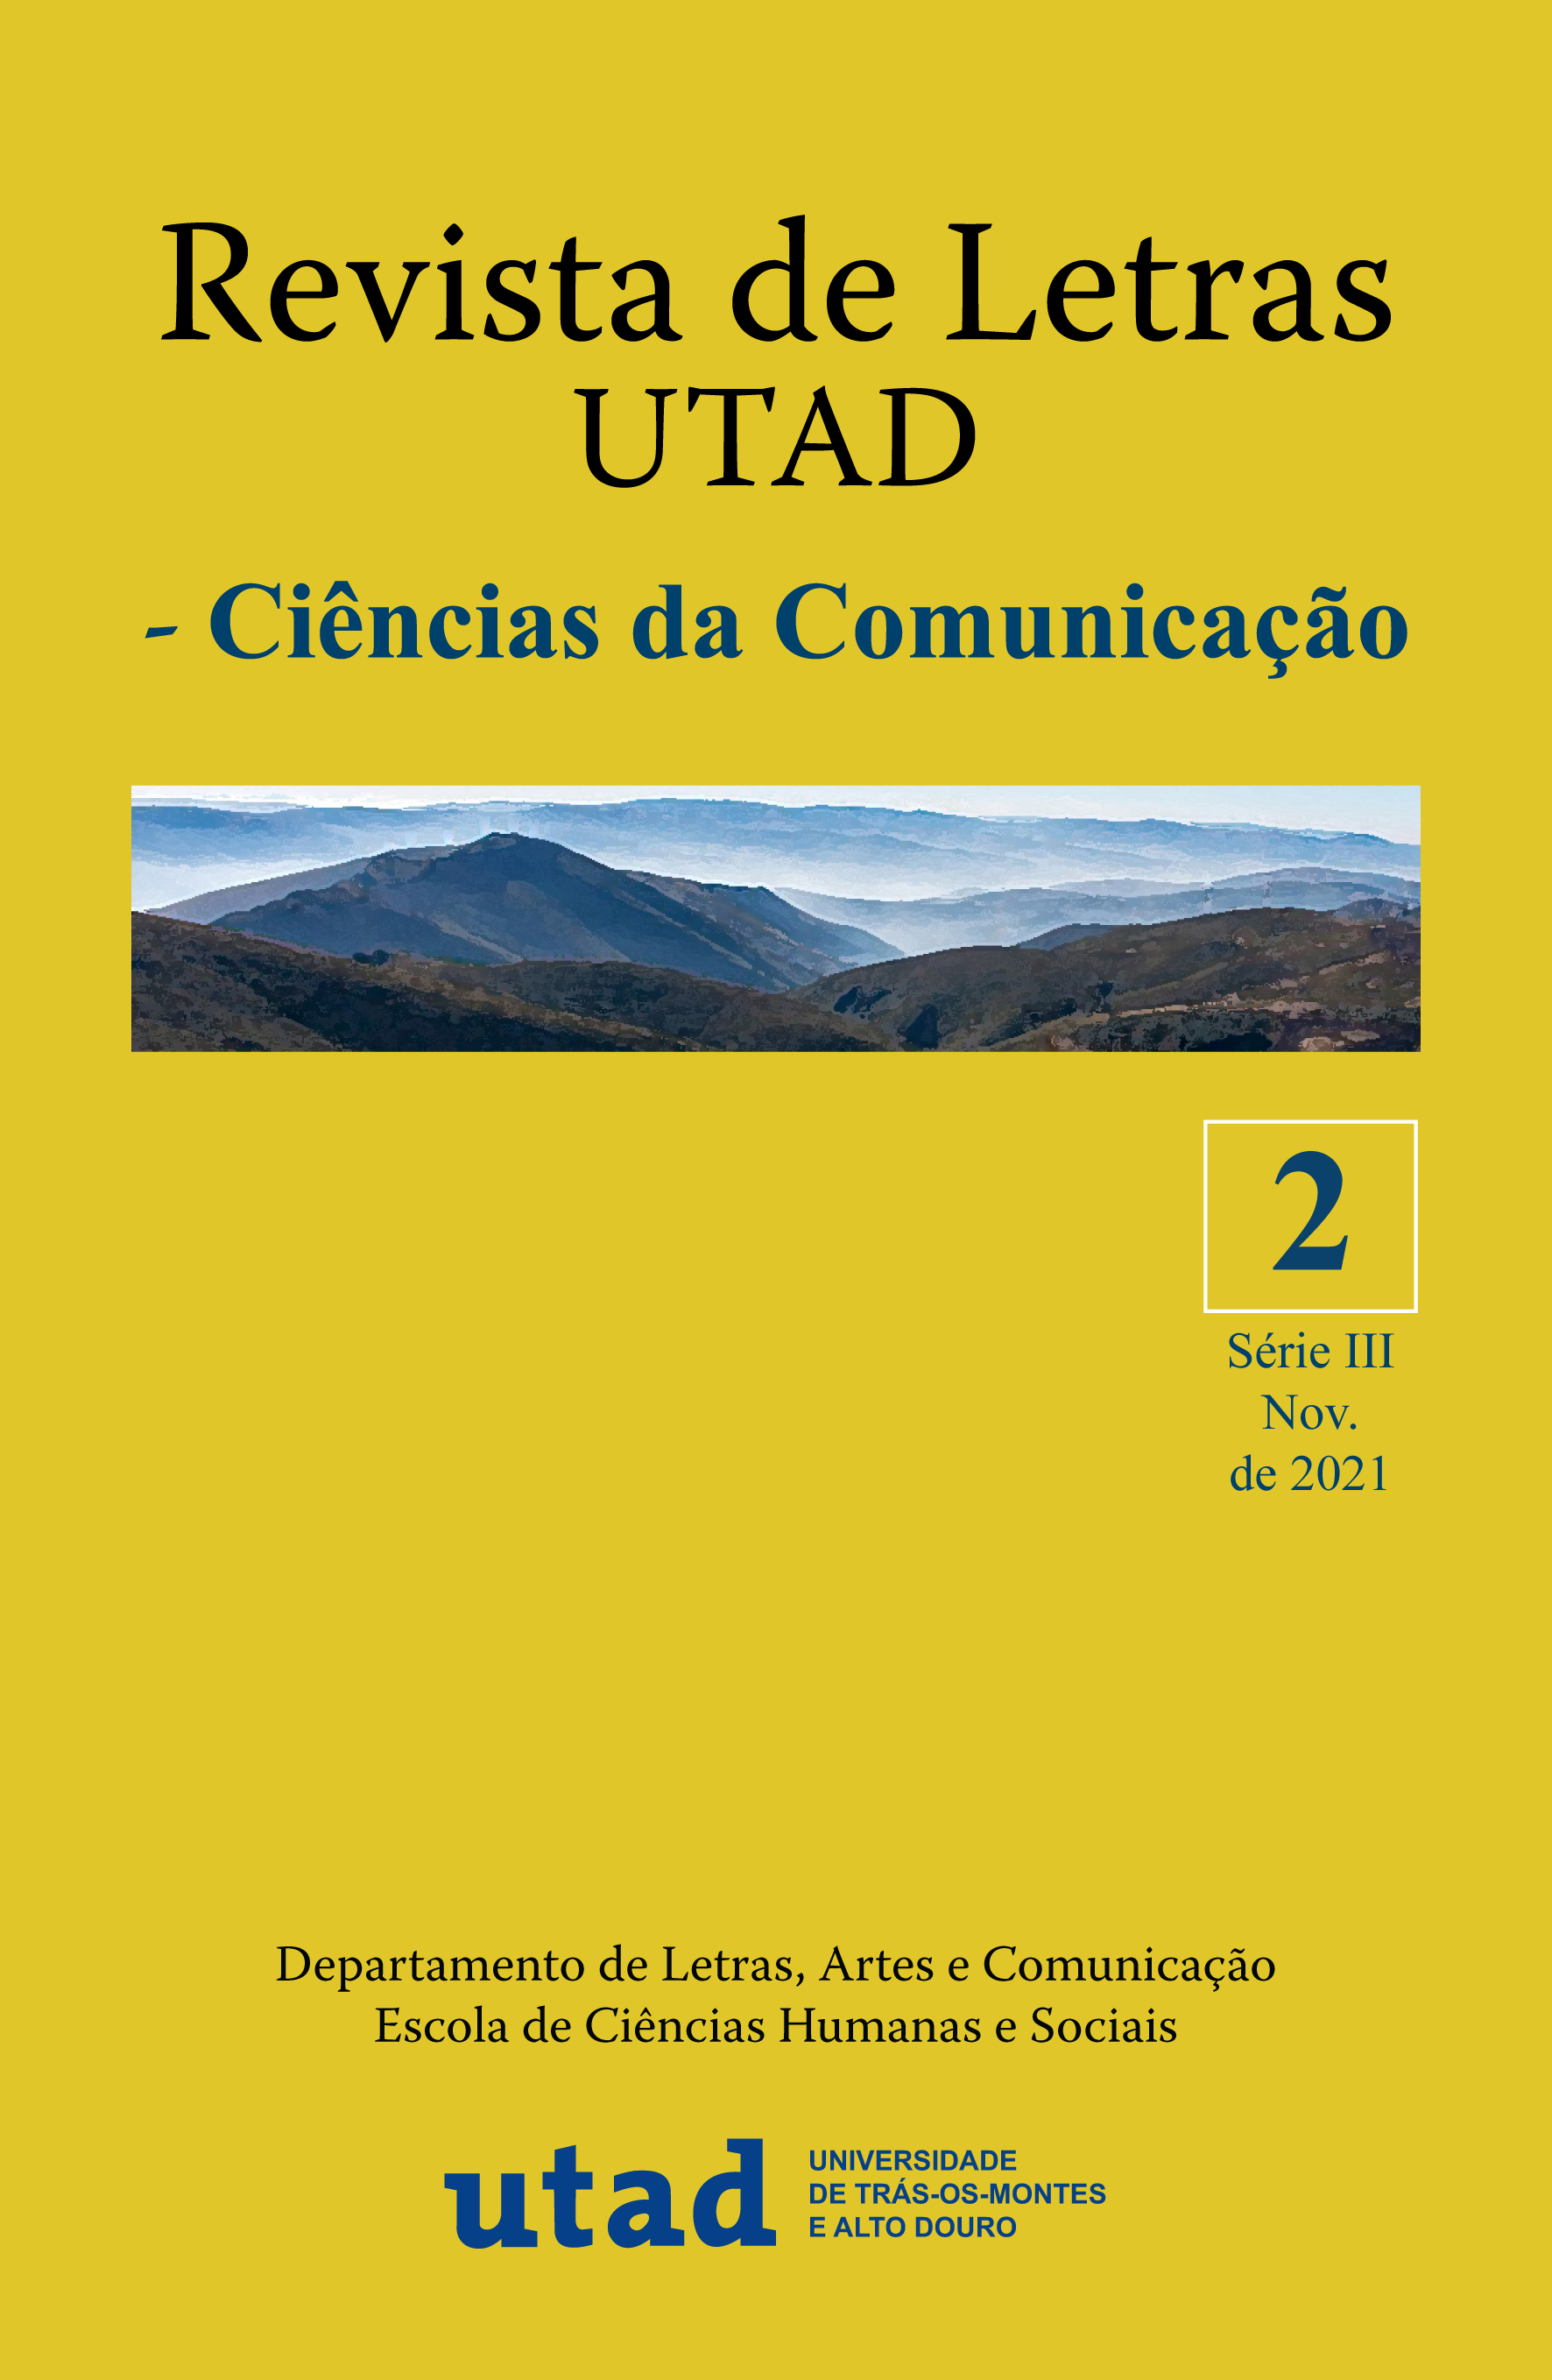 Revista de Letras UTAD, série III, nº2